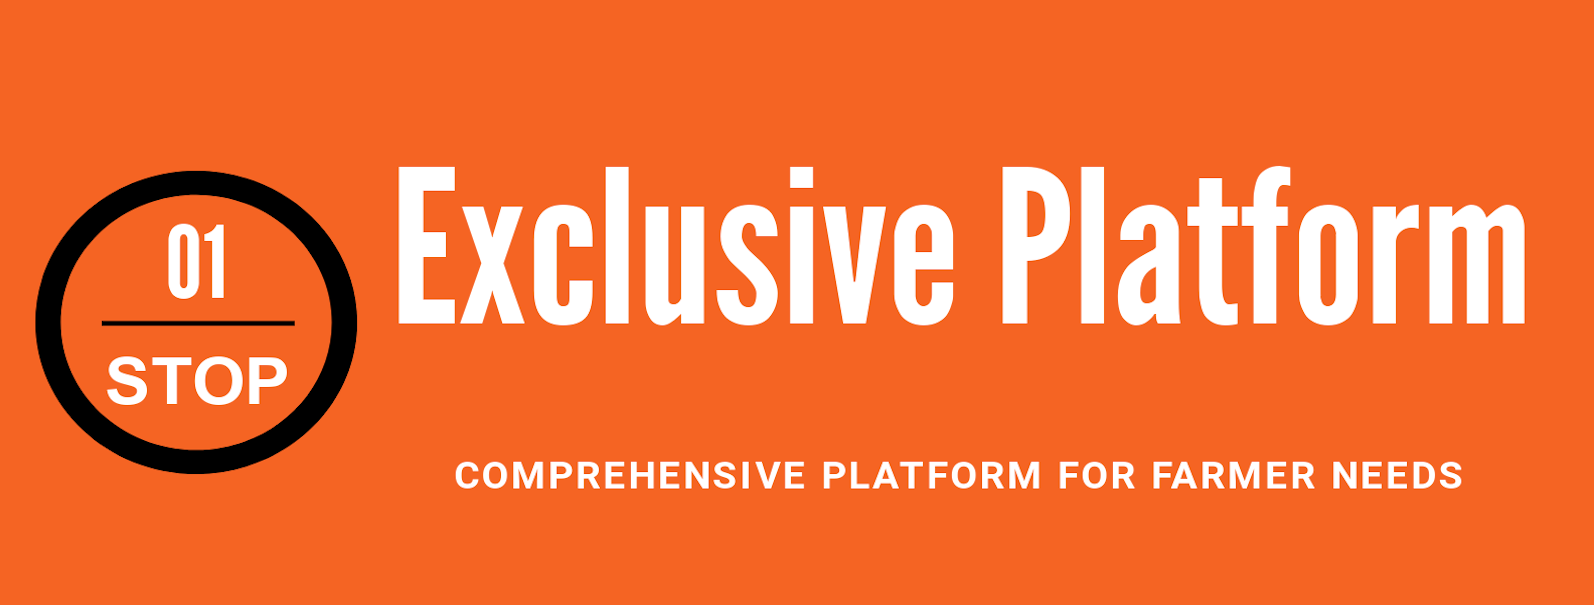 exclusive_platform